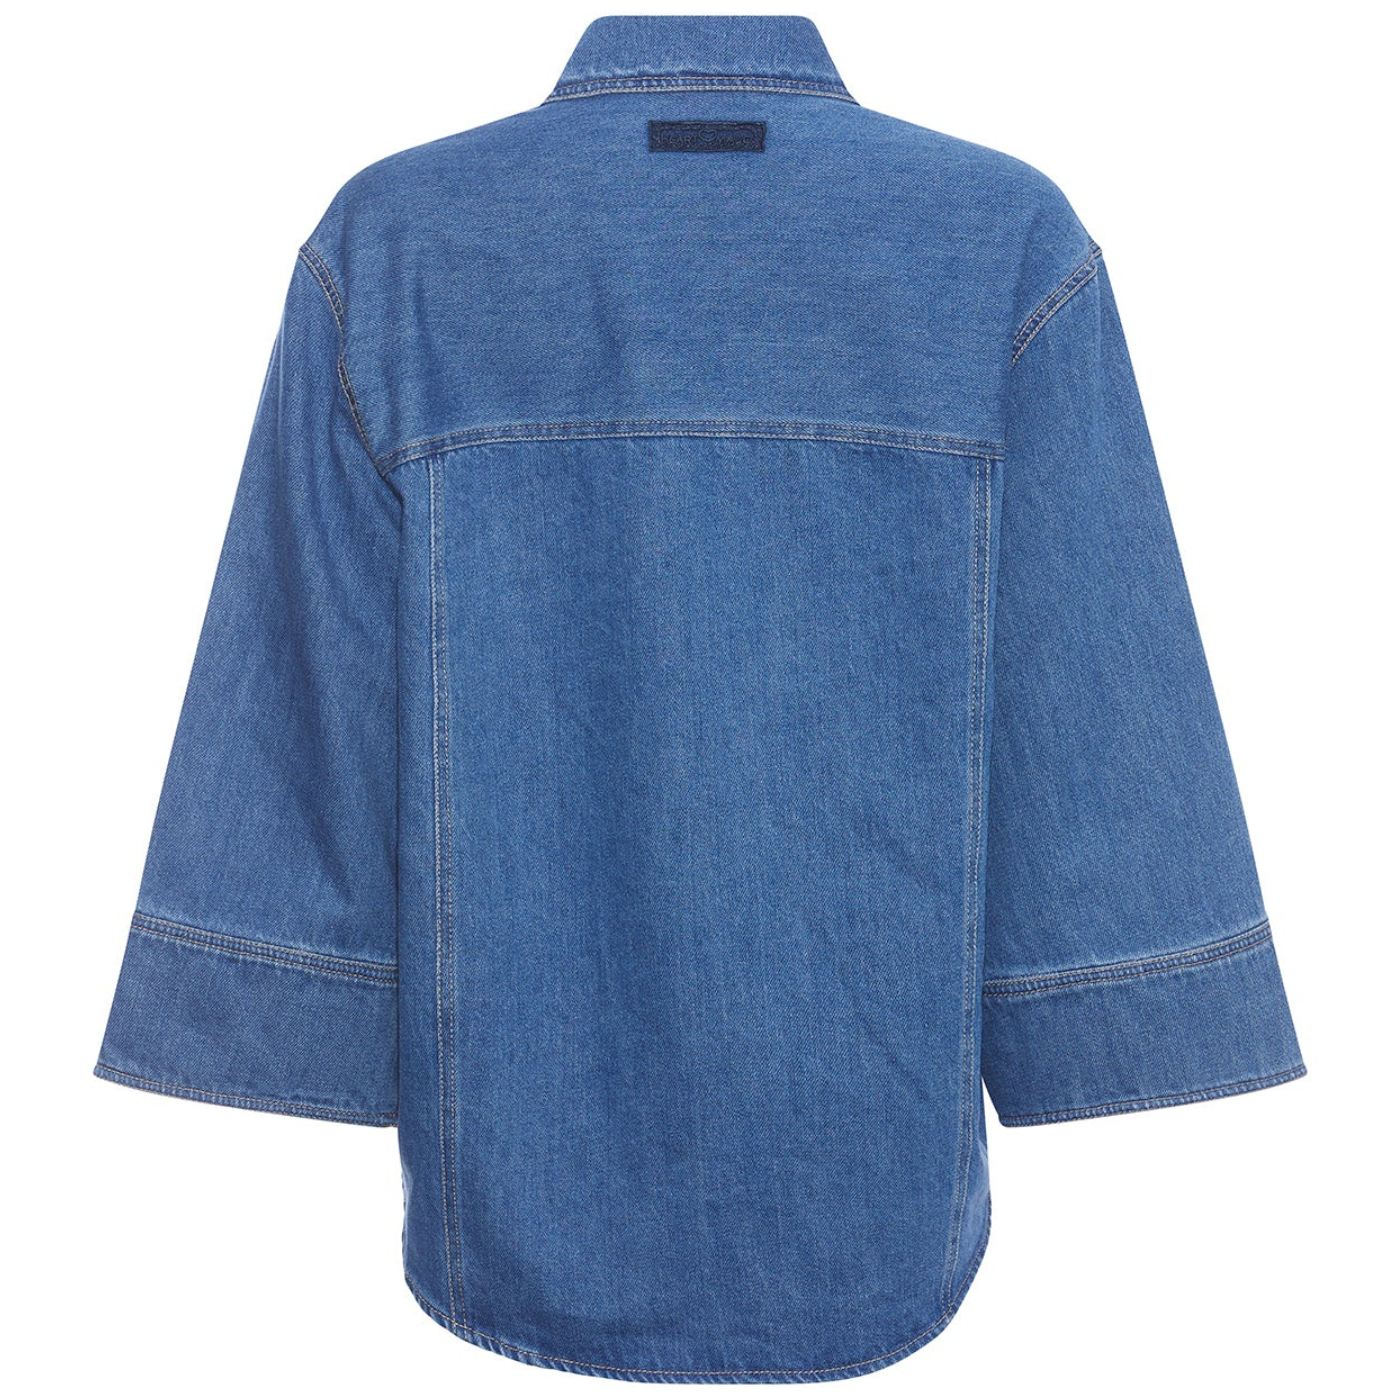 Heartmade Manel shirt blue denim